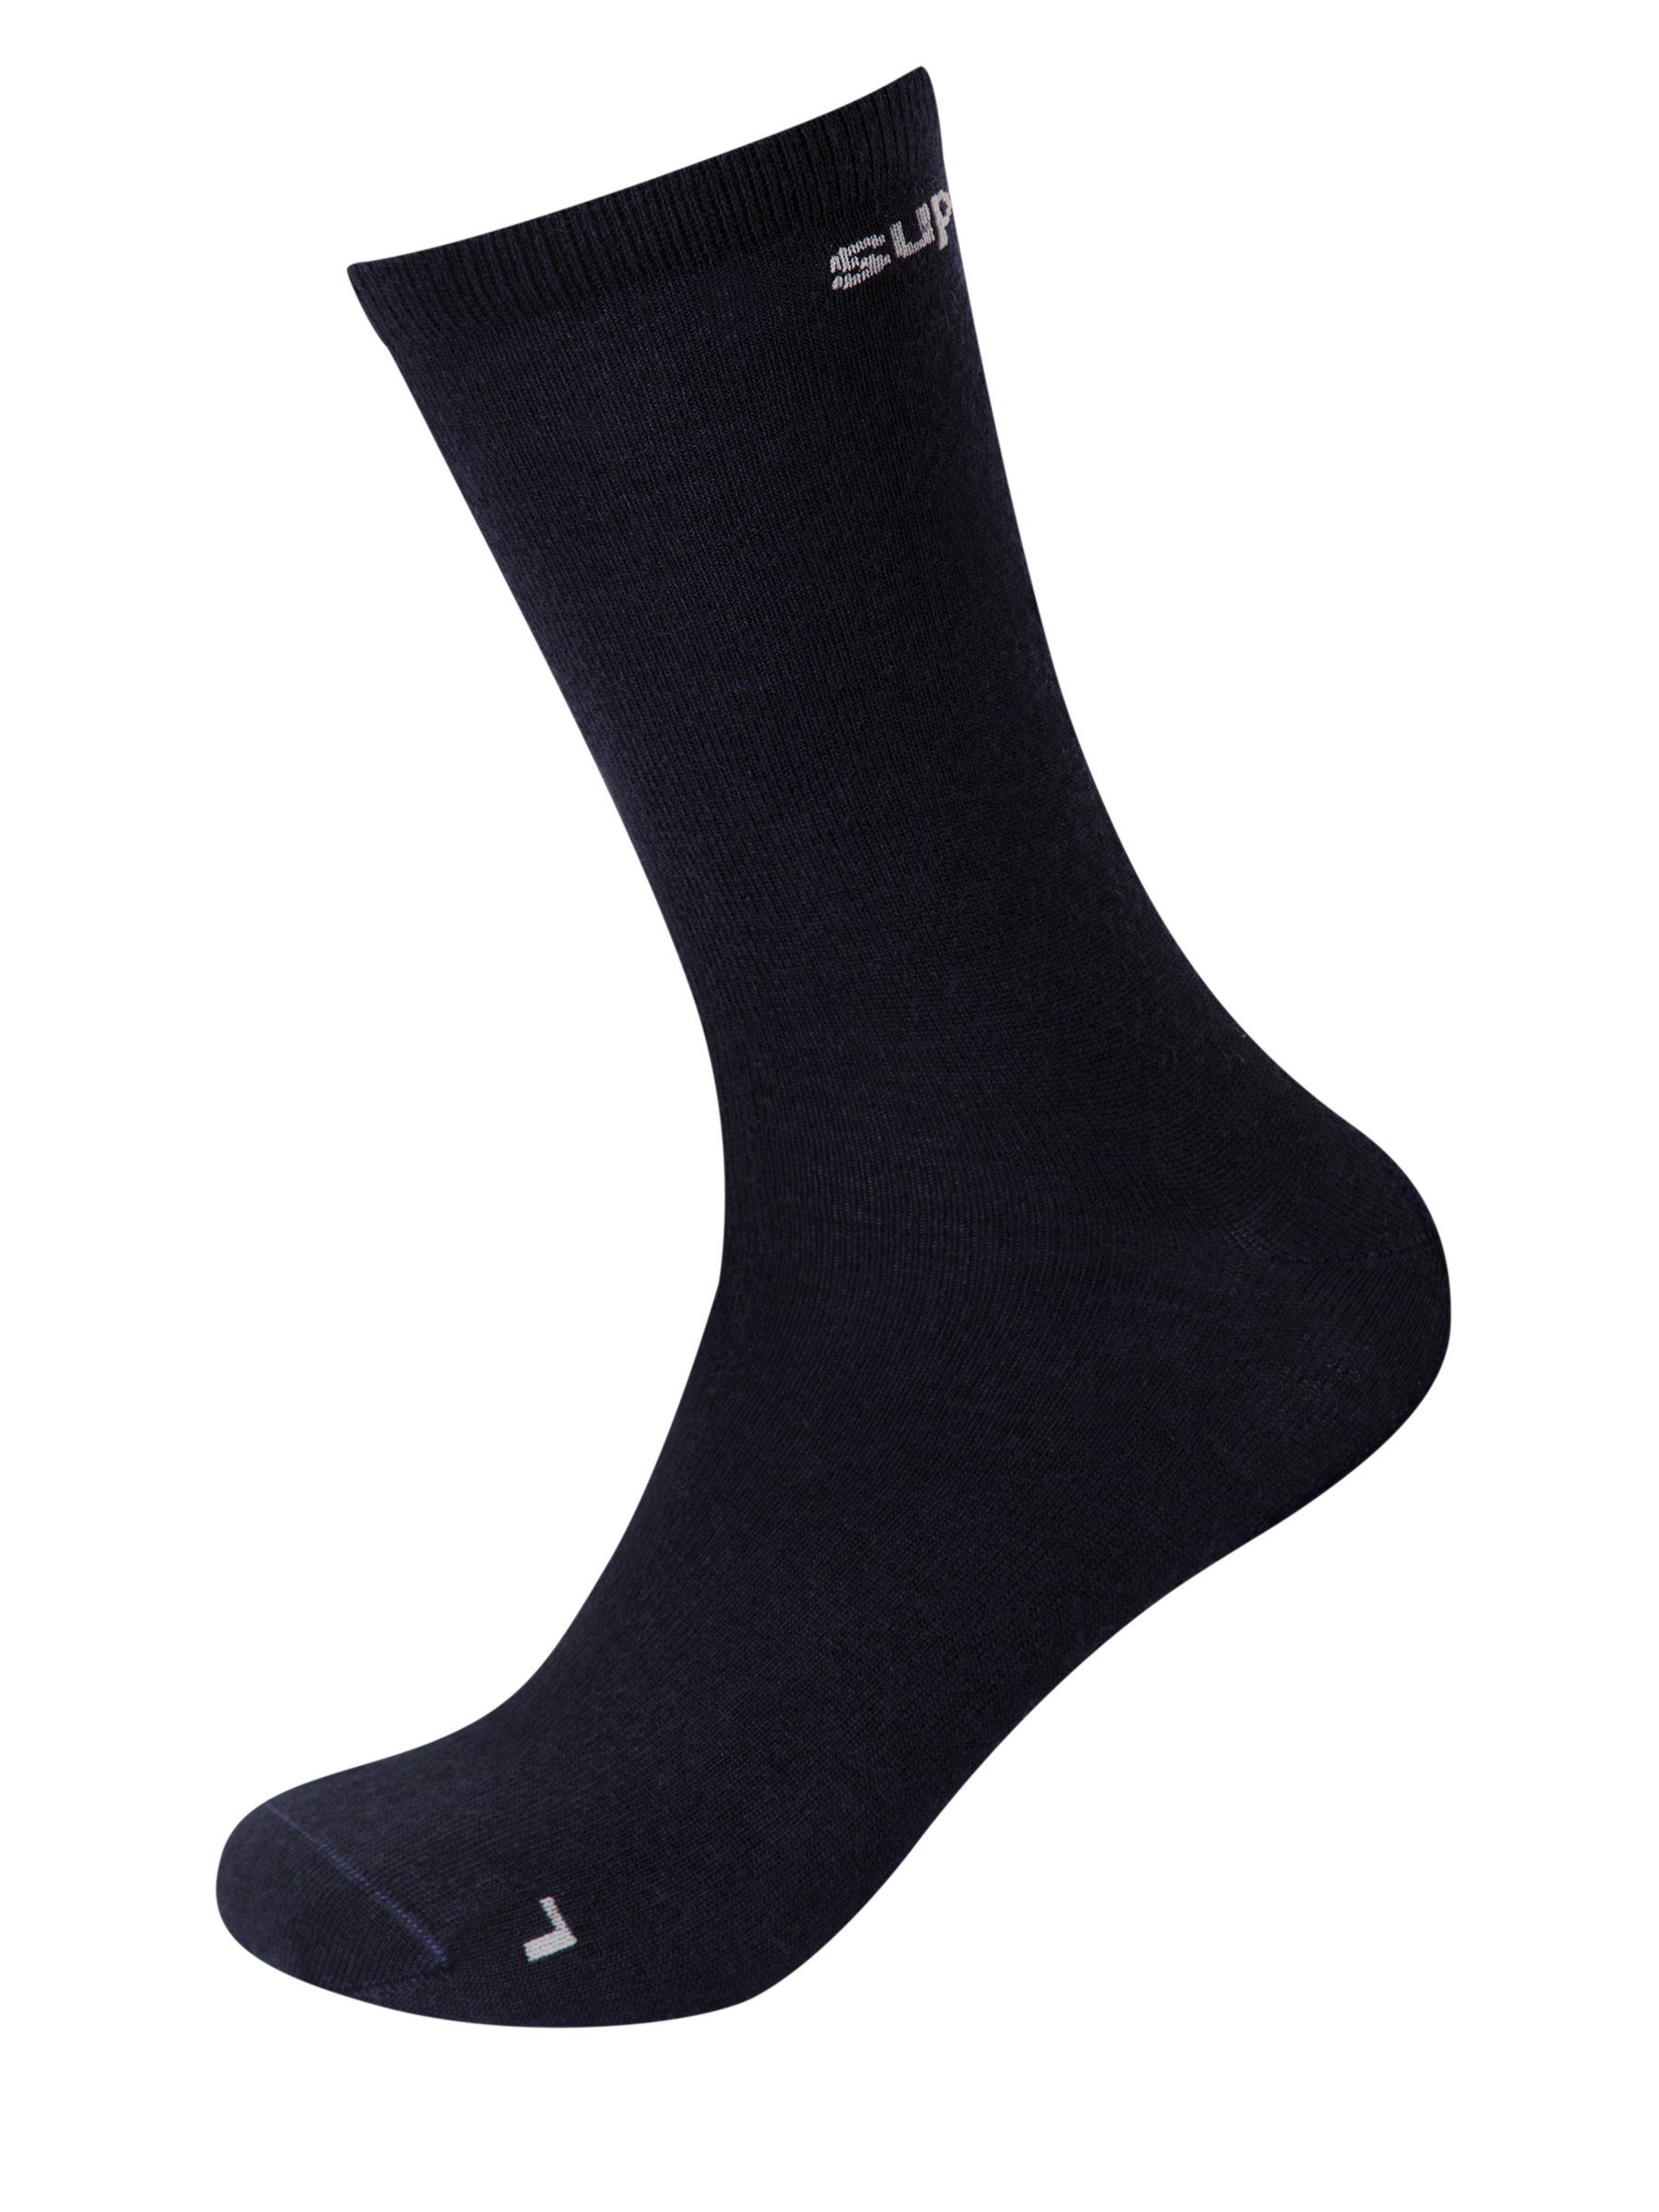 SUPER.NATURAL Sportsocken Merino Socken SN ALL DAY SOCKS (2-Paar) No smell-no worries, Merino-Materialmix Jet Black/Vapor Grey